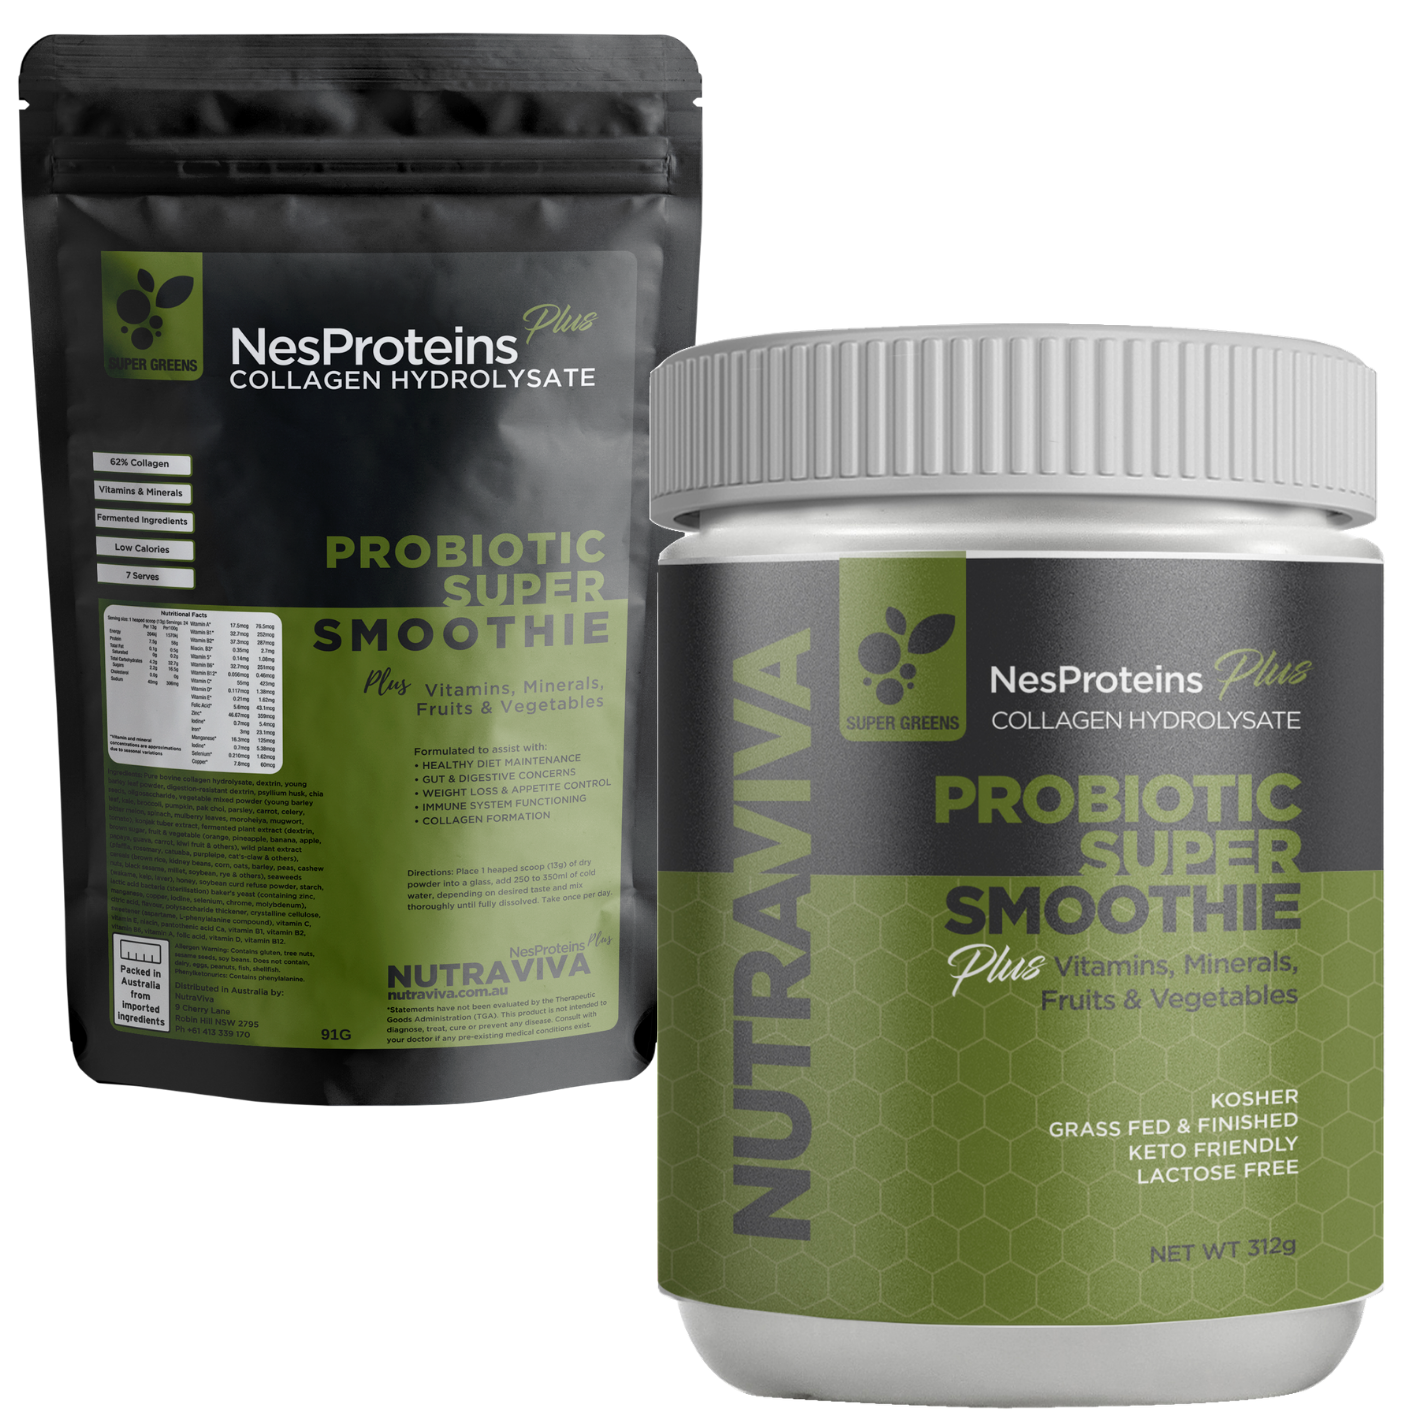 Nutraviva Plus Probiotic Super Smoothie